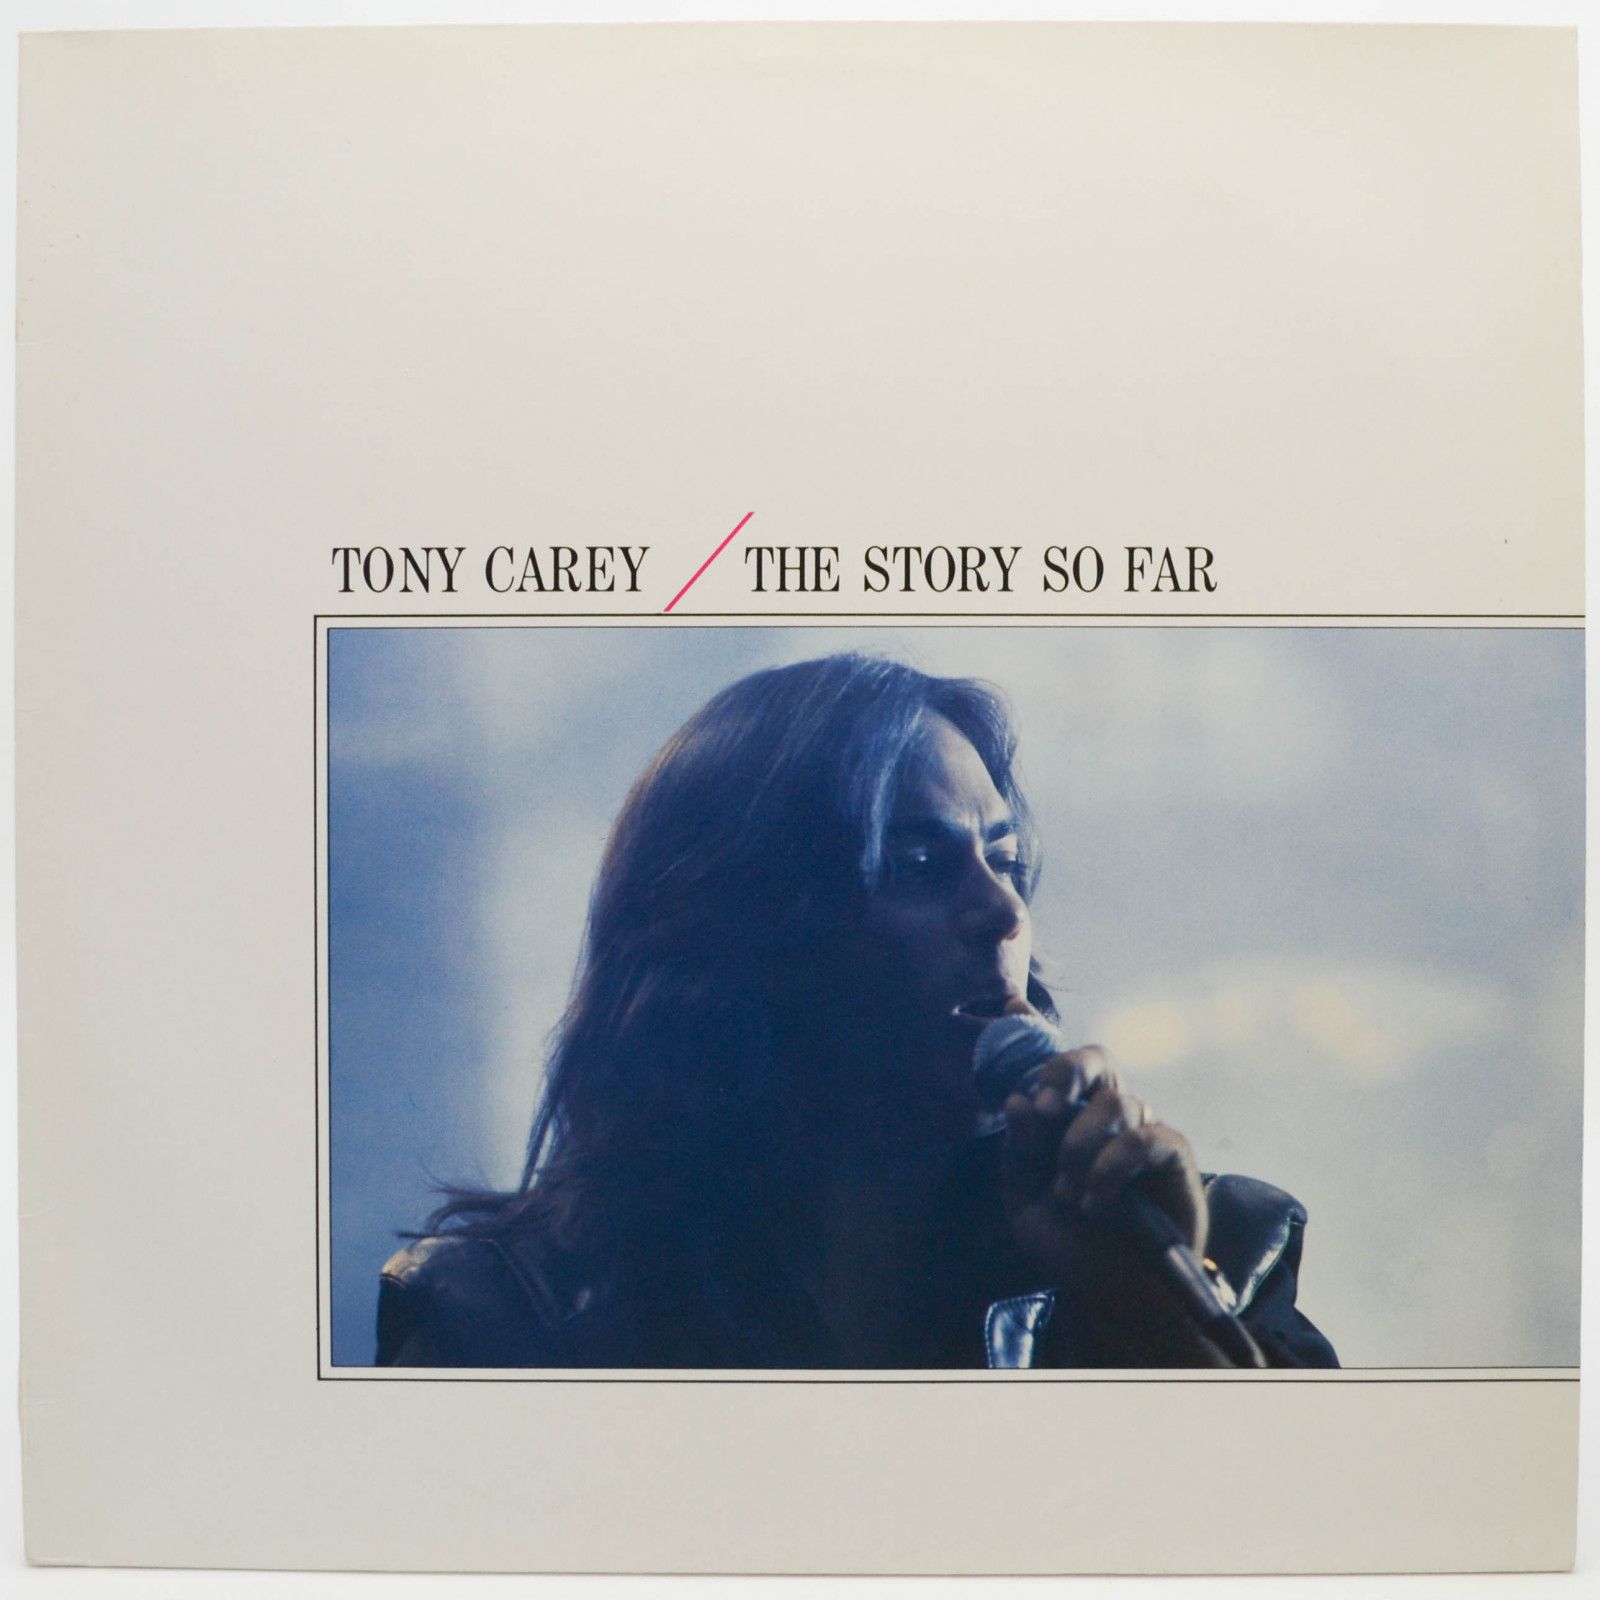 Tony Carey — The Story So Far, 1989